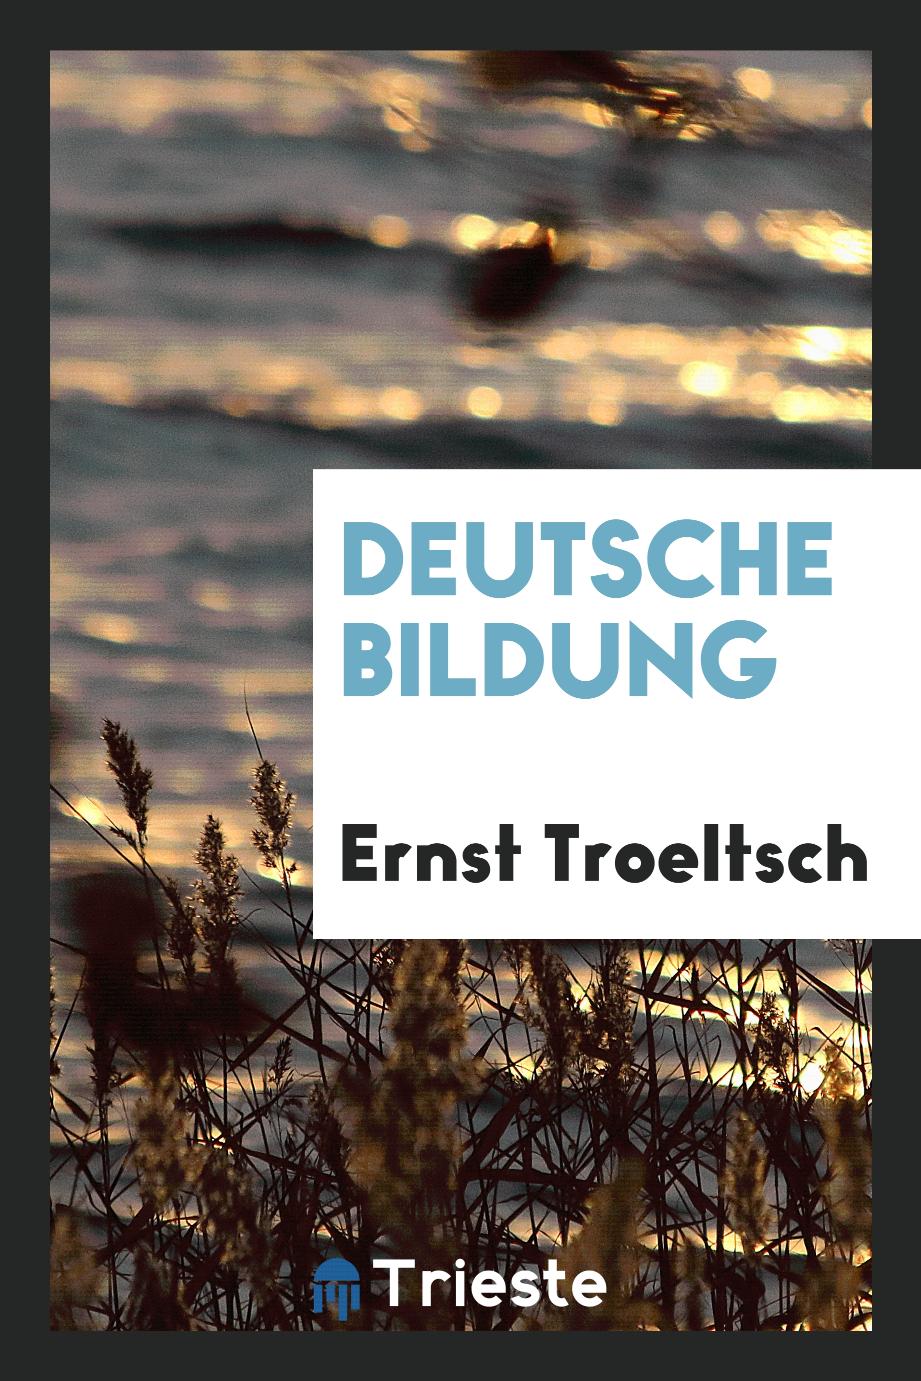 Ernst Troeltsch - Deutsche Bildung